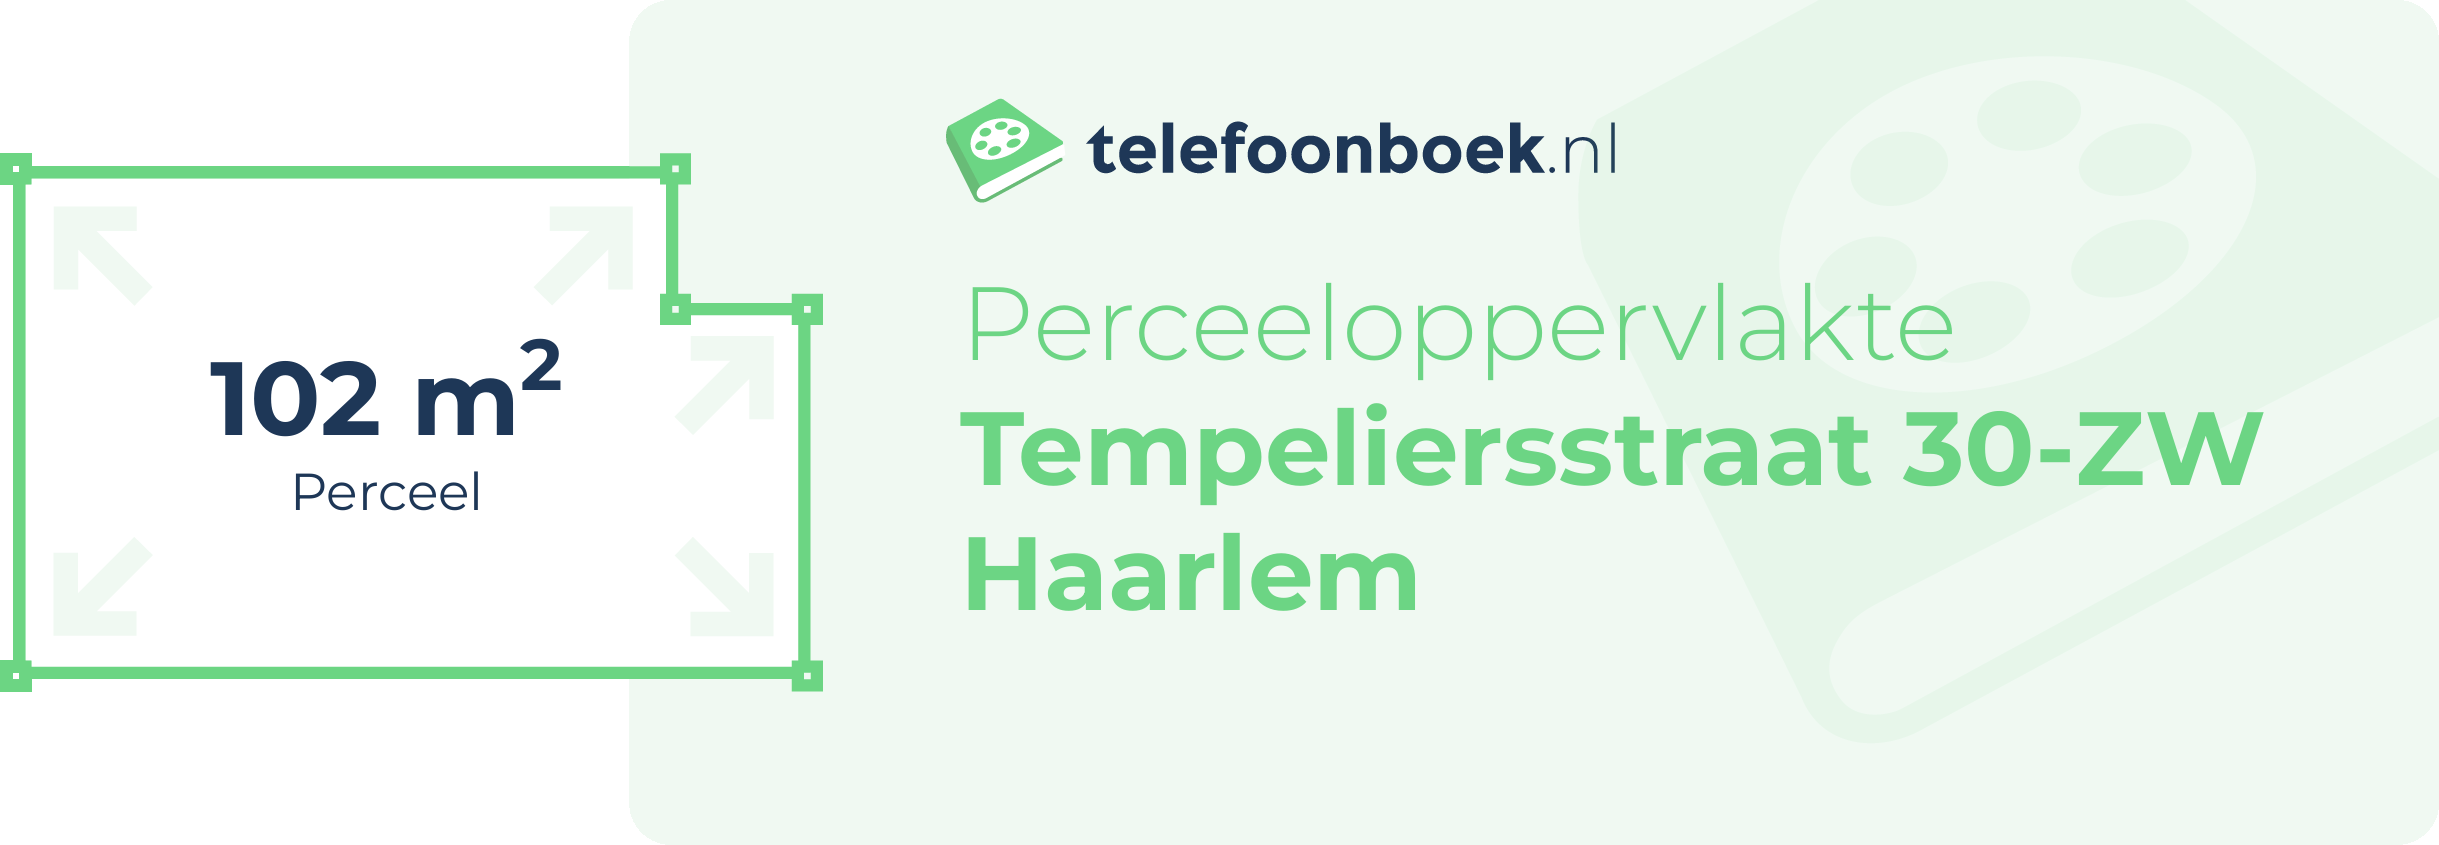 Perceeloppervlakte Tempeliersstraat 30-ZW Haarlem